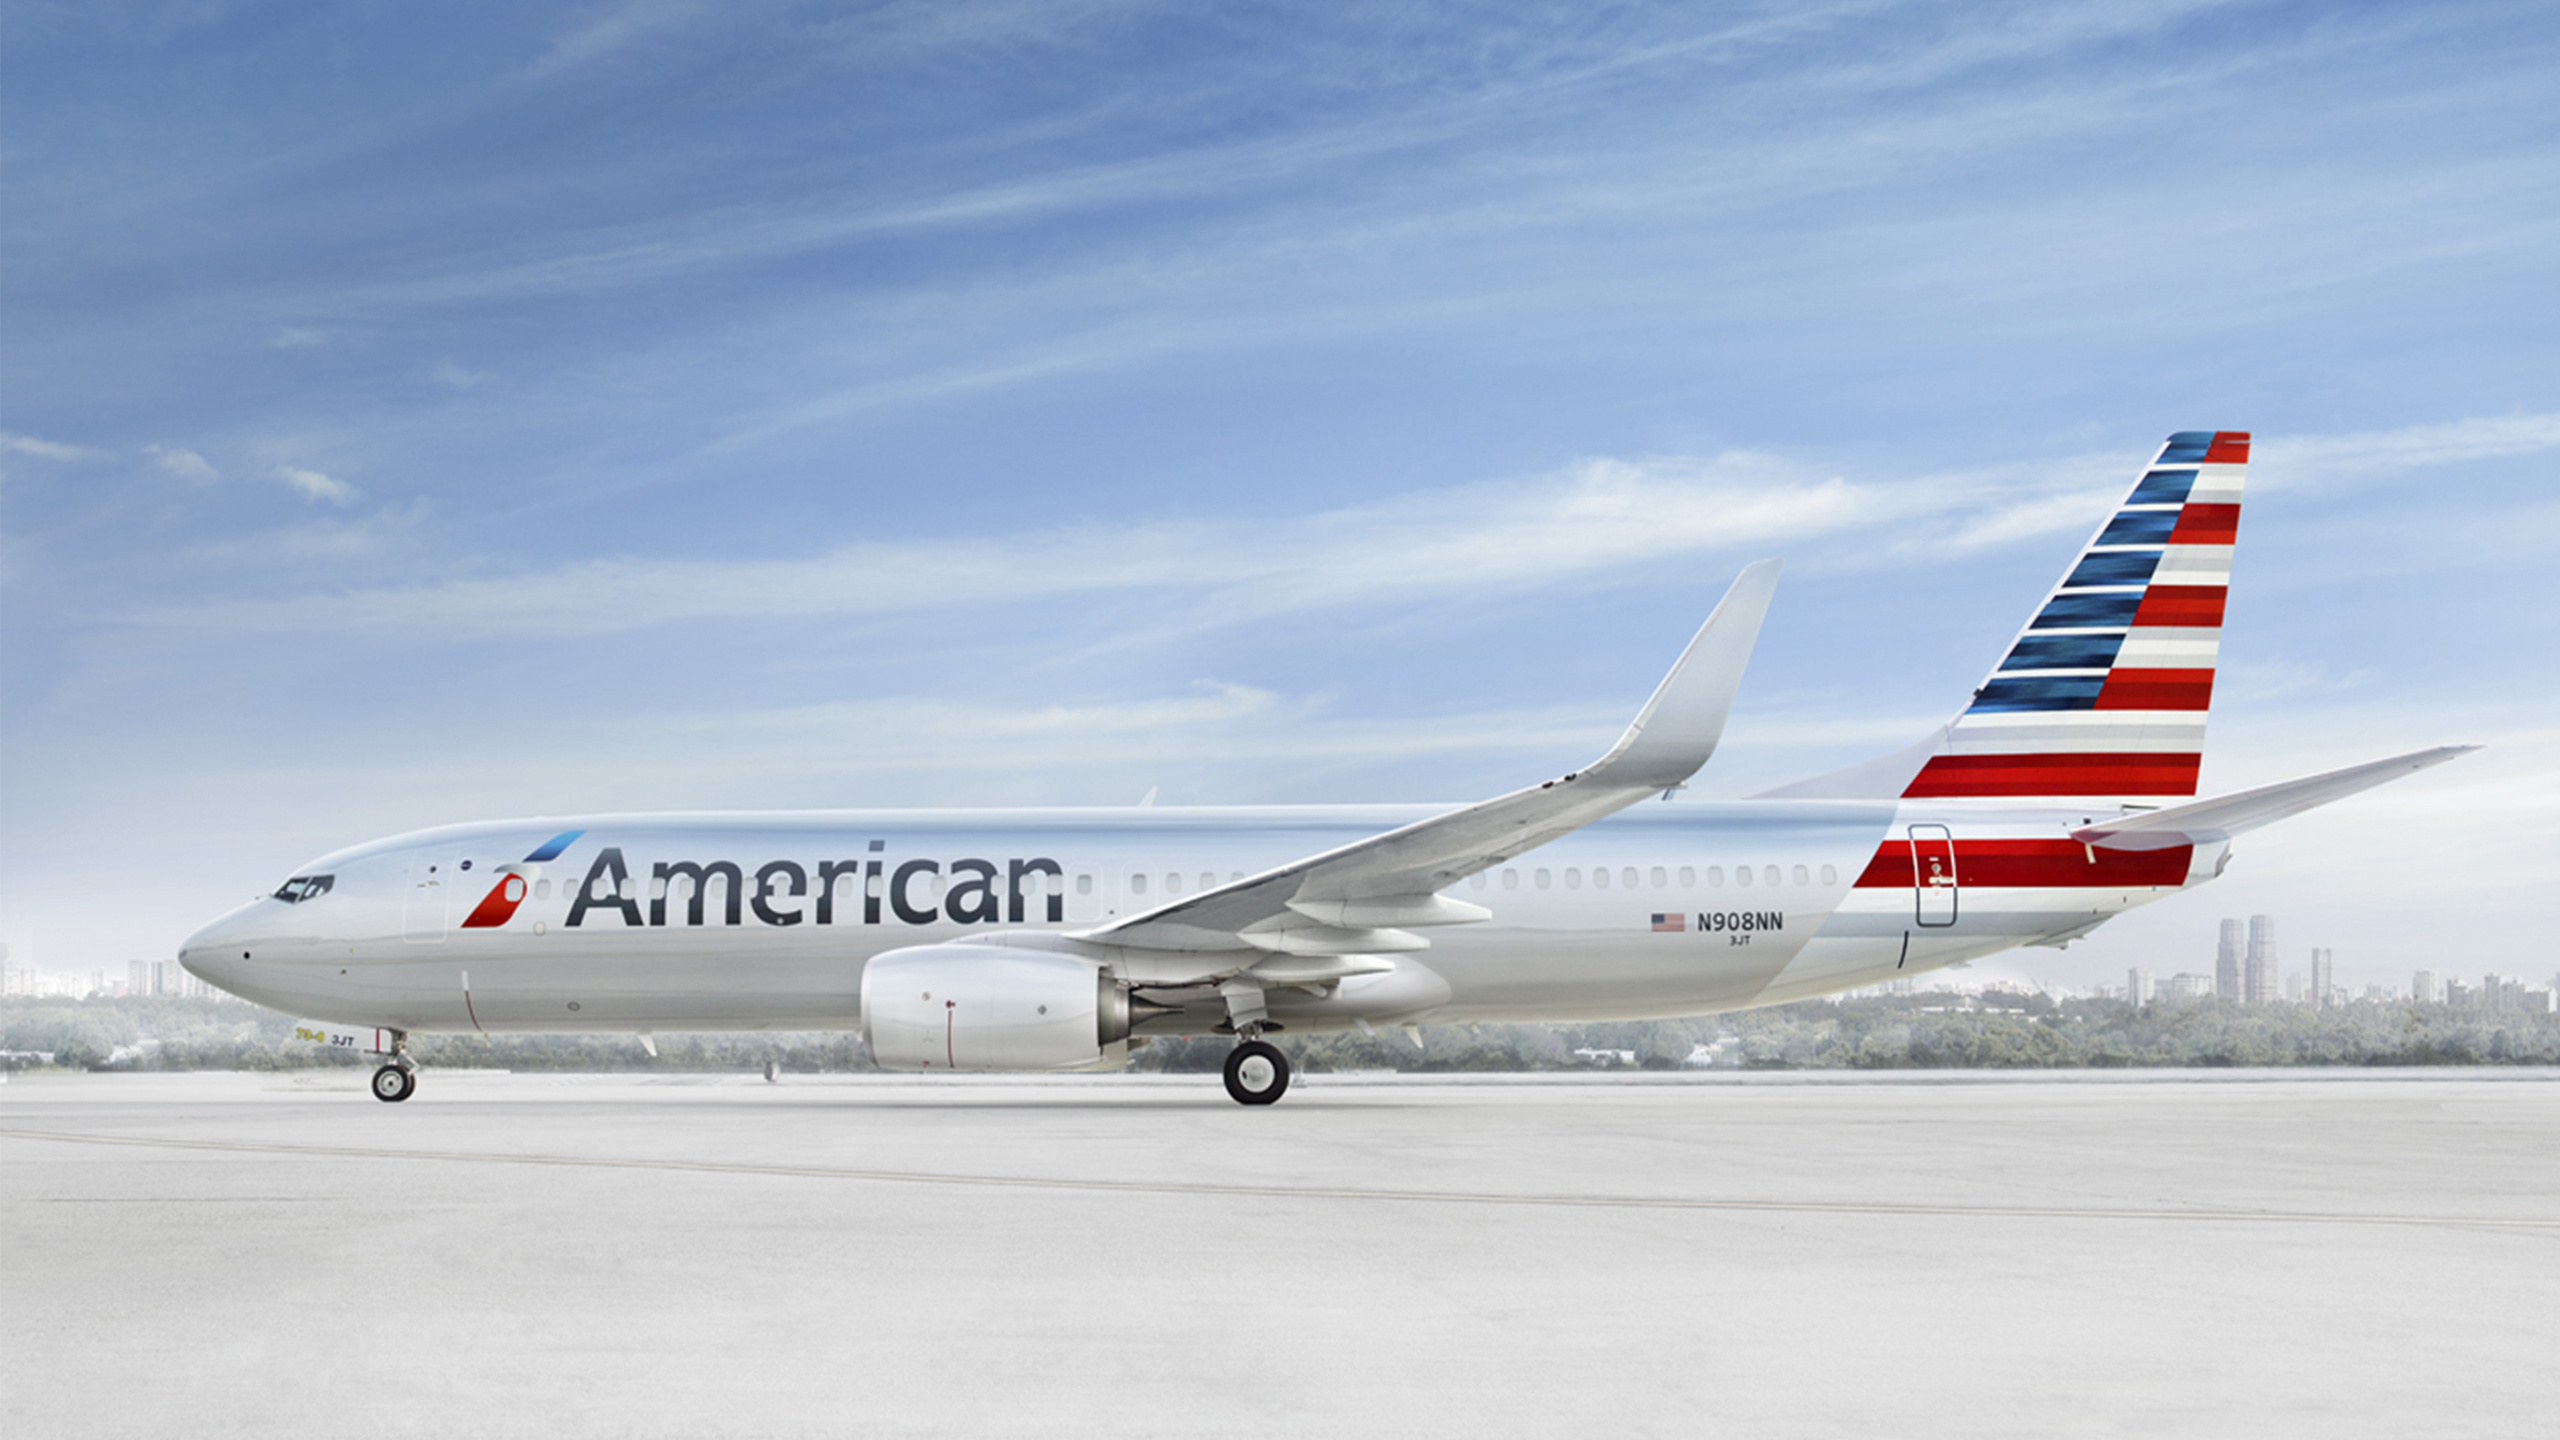 American Airlines resuming flights, TLV destination, Travel news, Flight updates, 2560x1440 HD Desktop